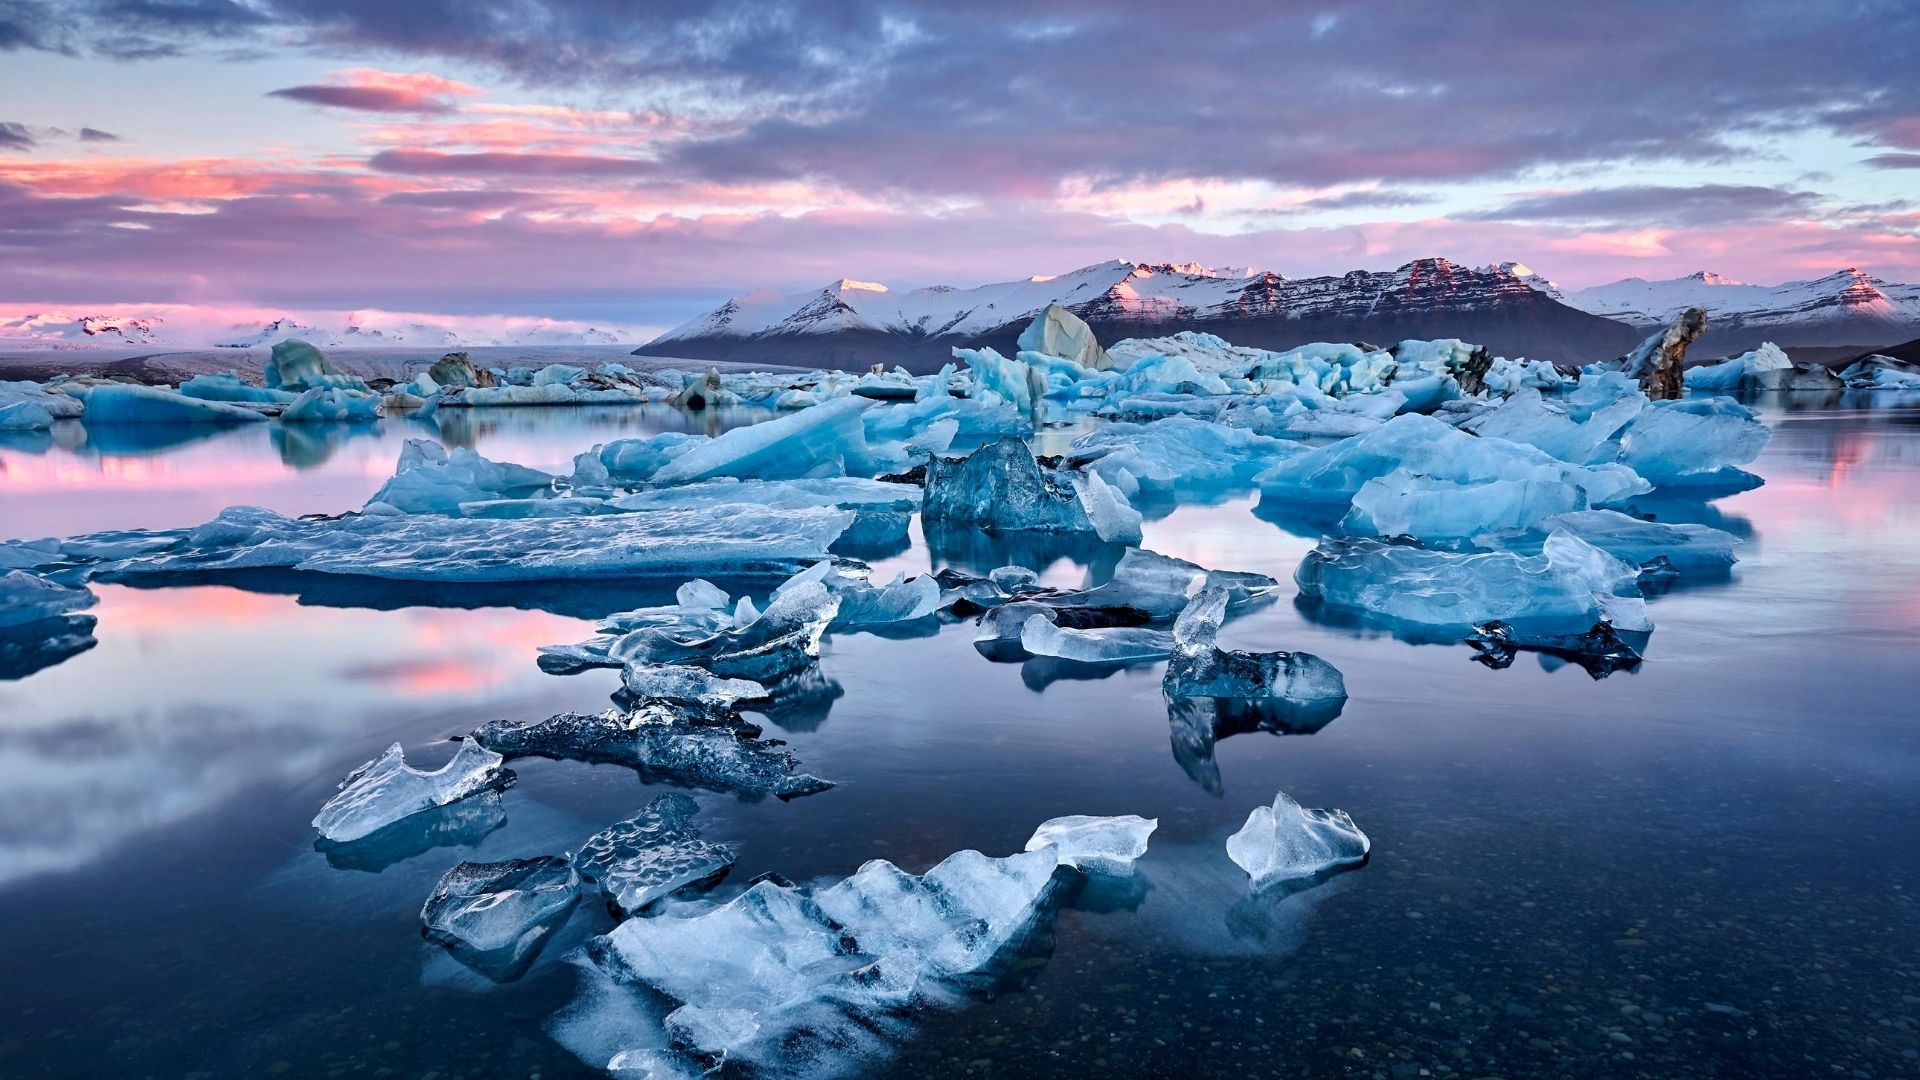 NASA destaca fotografia com aurora boreal e vulcão na Islândia